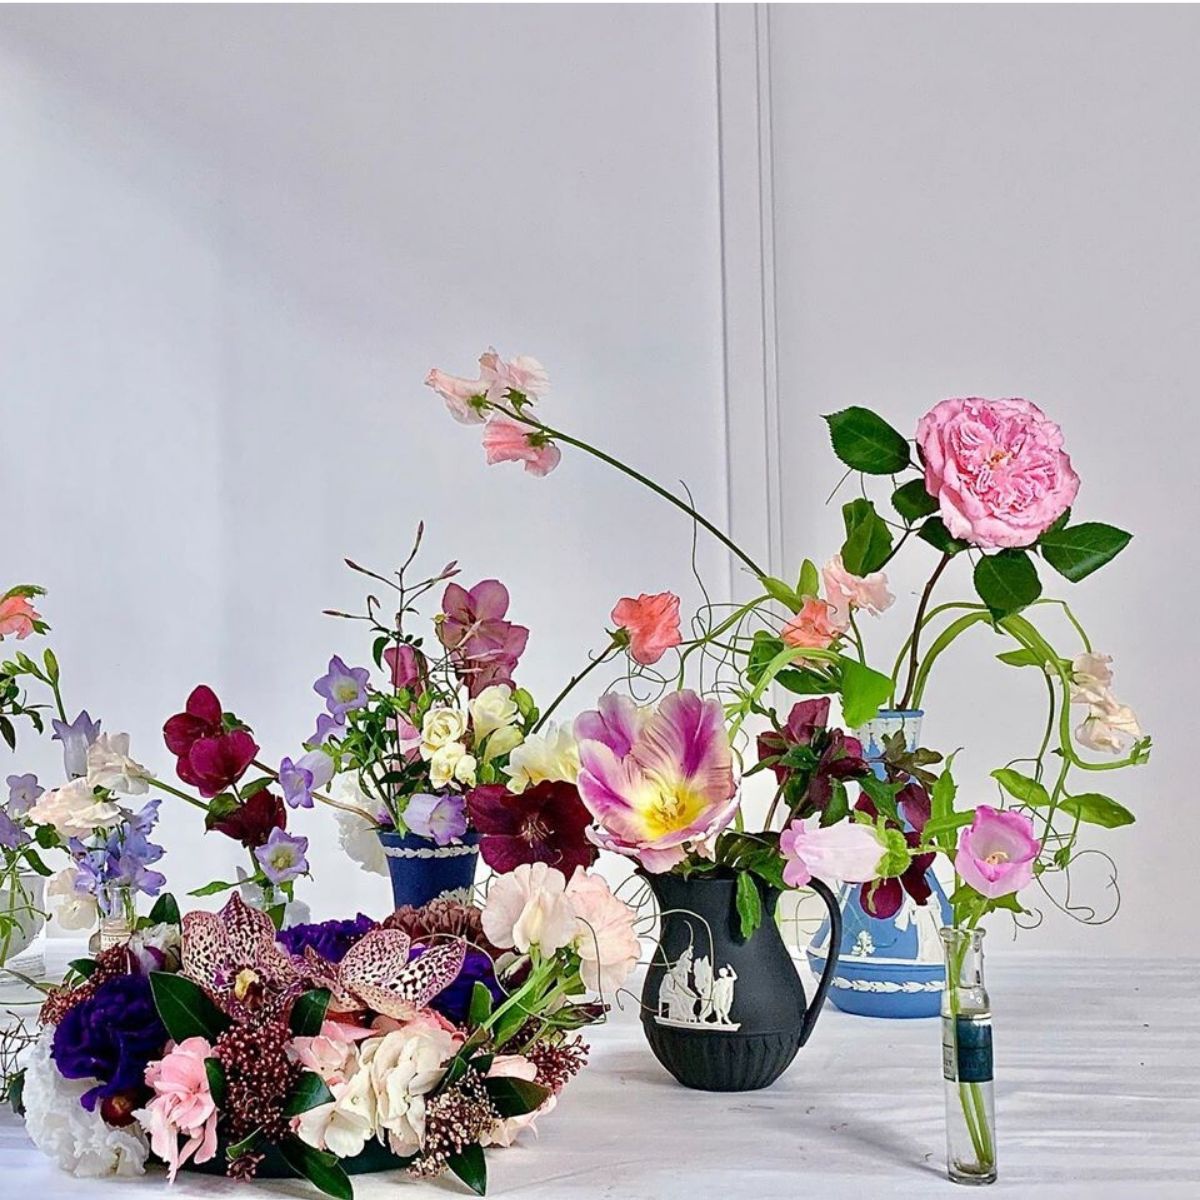 solomon-bloemen-florist-on-thursd-featured